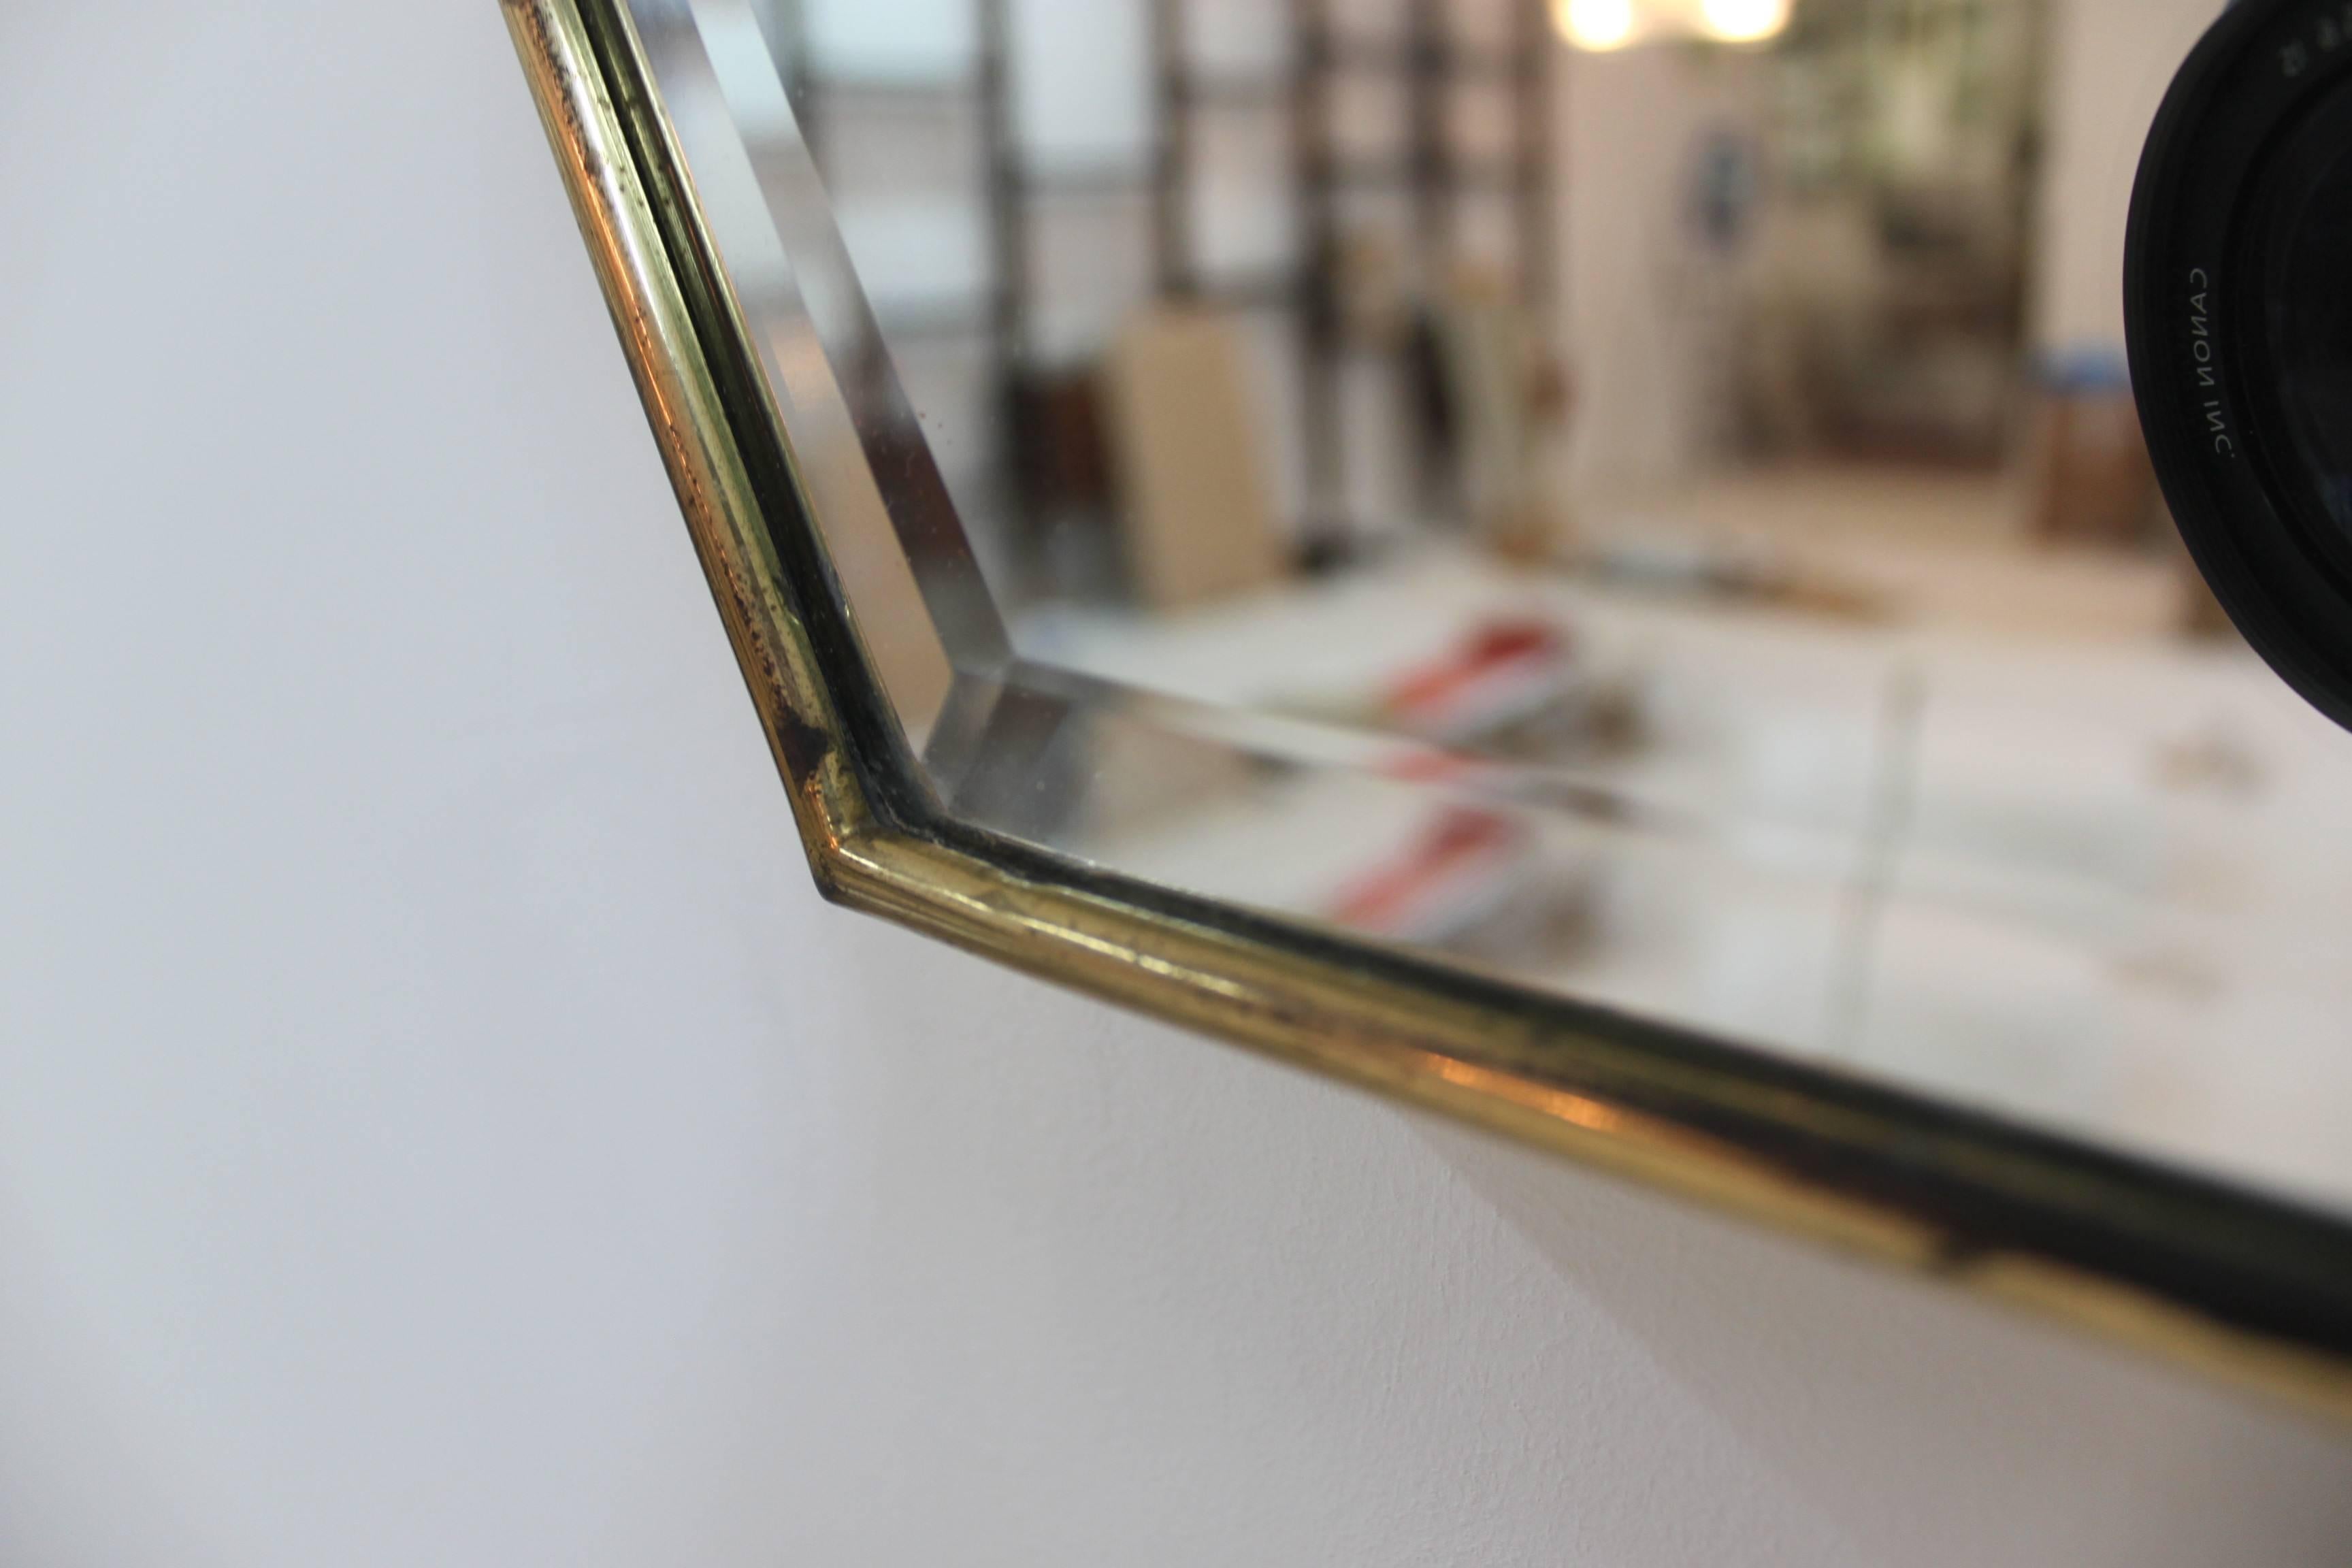 Mid-20th Century Italian Brass Mirror